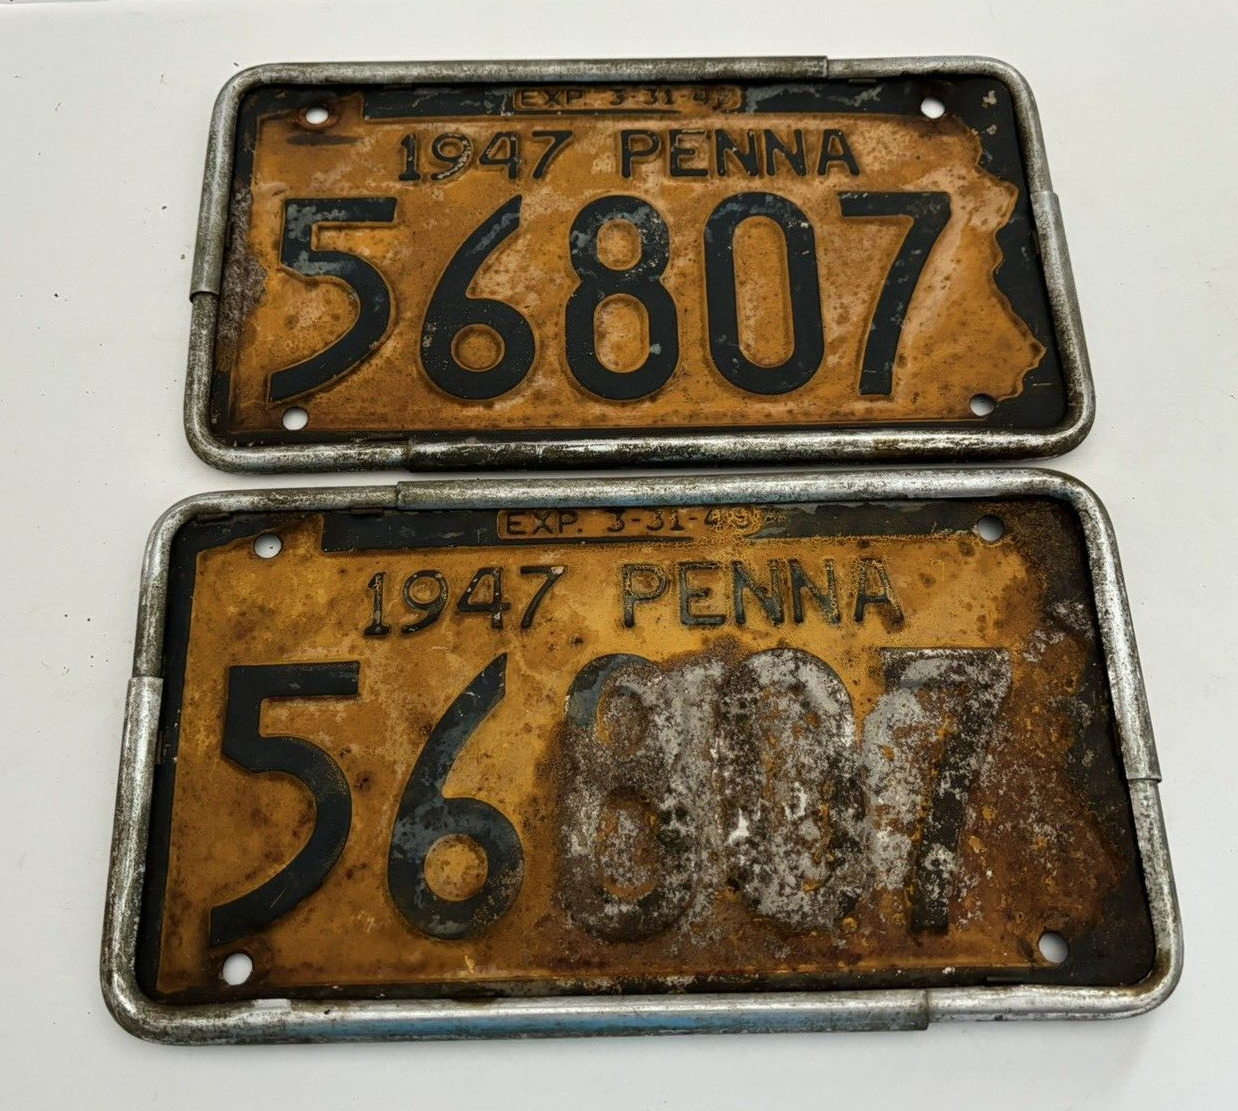 (2) Vintage 1947 Pennsylvania License Plates- 56807 Yellow